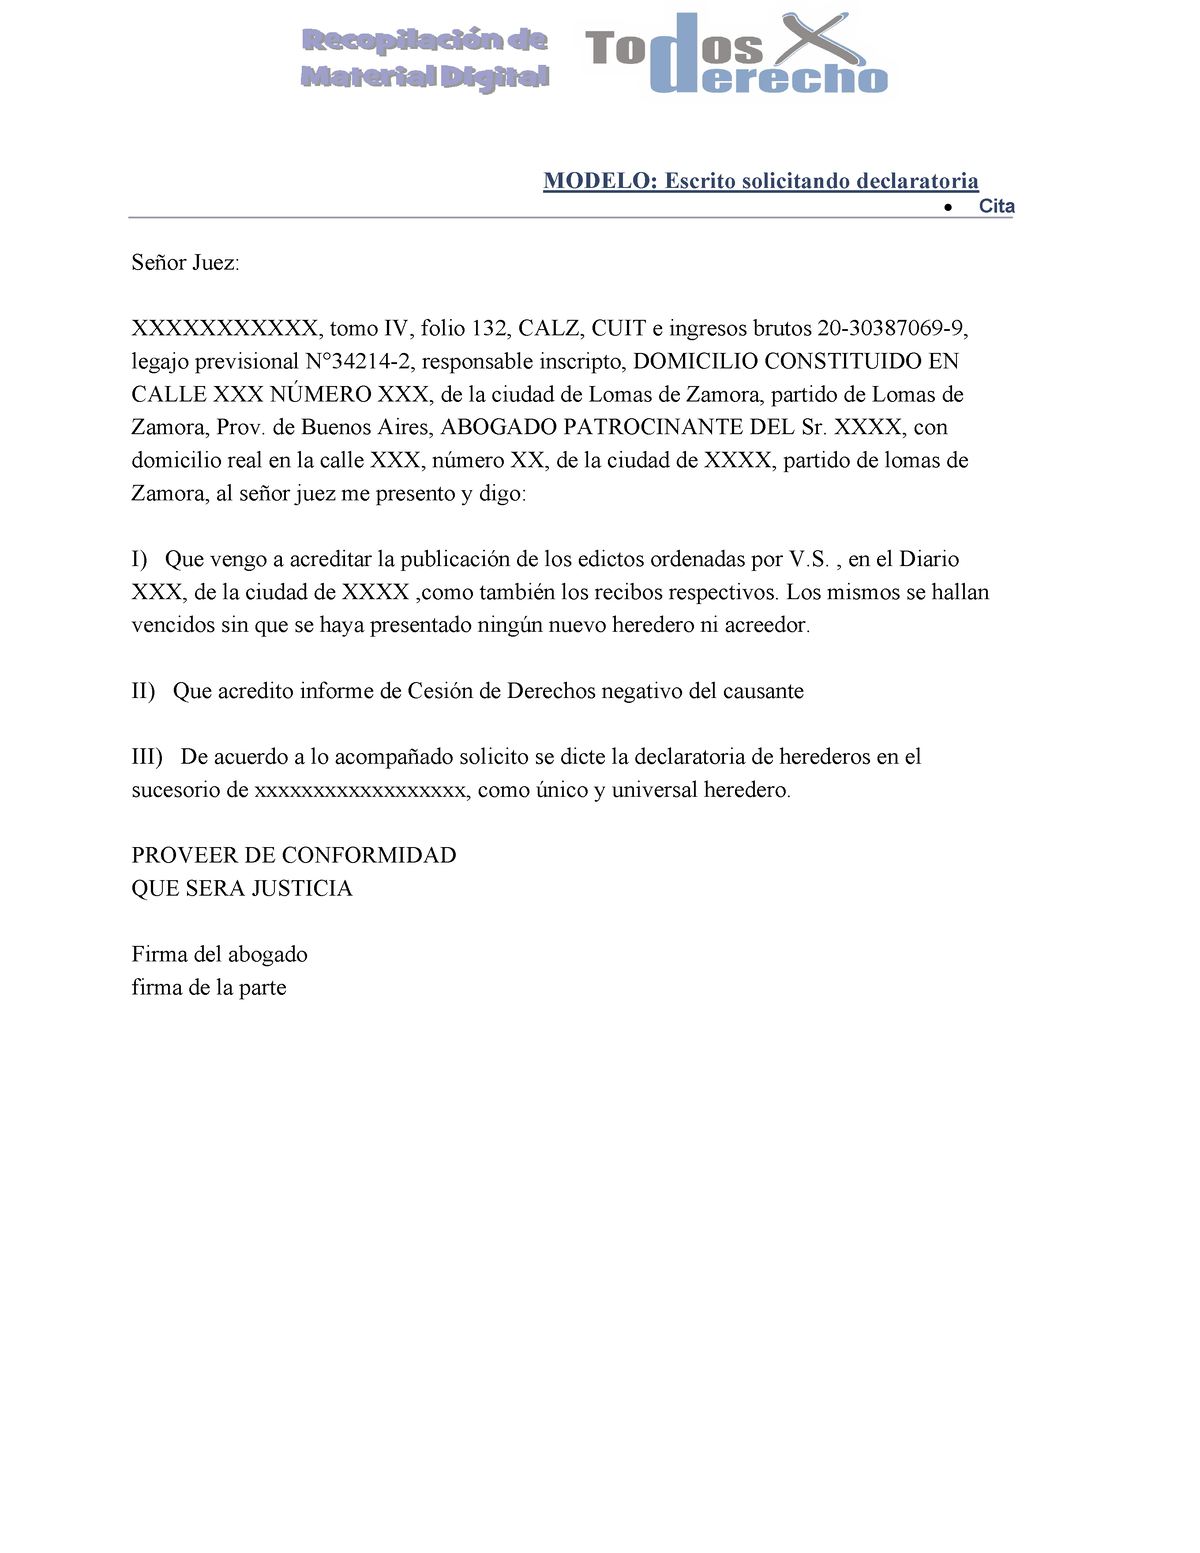 Modelo solicita declaratoria(full permission) - MODELO: Escrito solicitando  declaratoria - Cita - Studocu